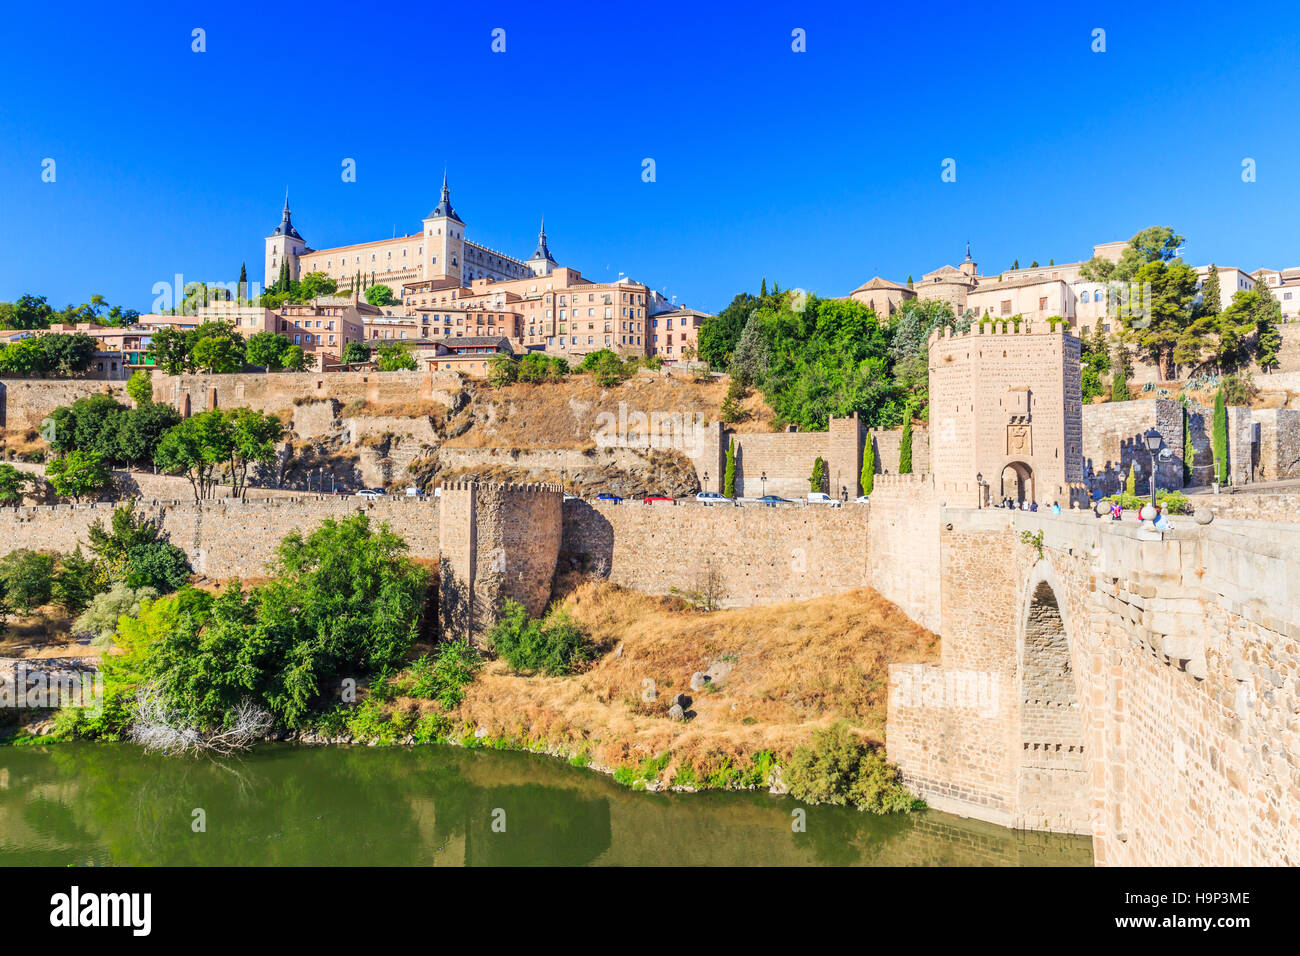 Toledo, Spagna. Vista panoramica della città vecchia e il suo Alcazar(Royal Palace). Foto Stock